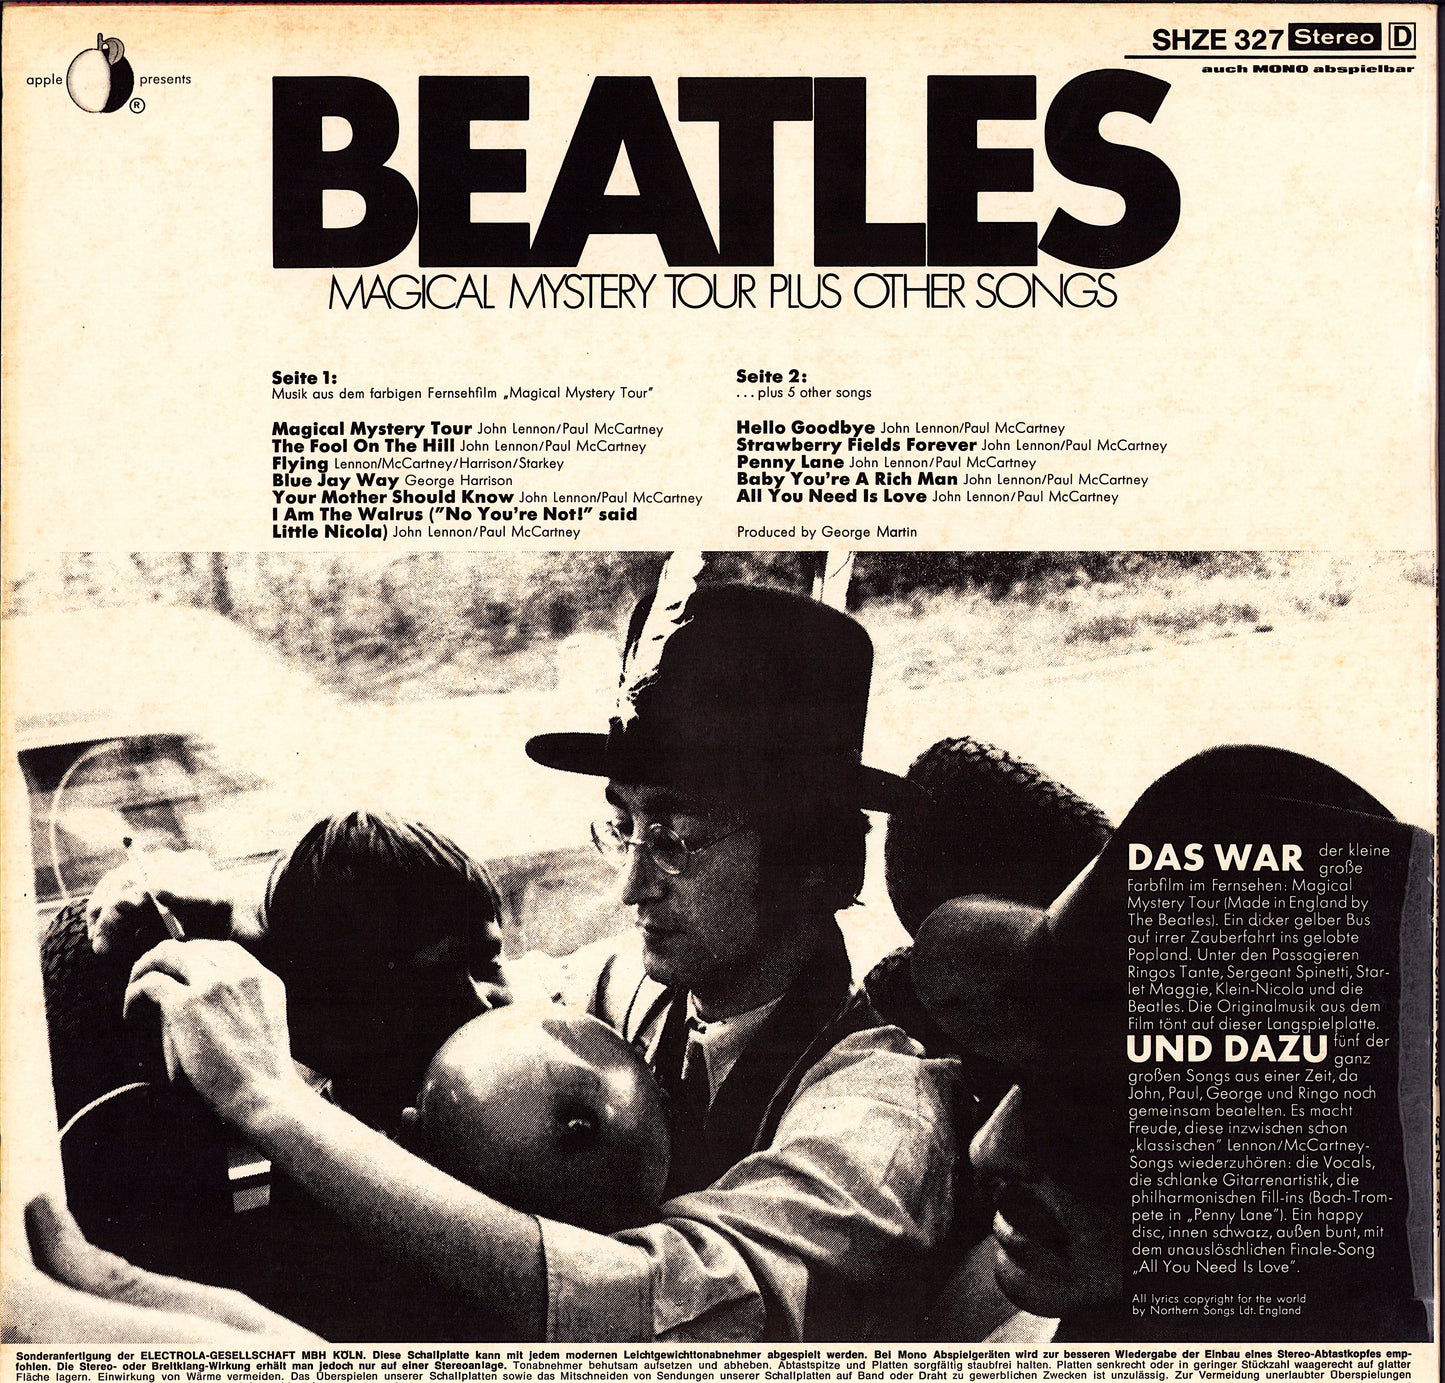 The Beatles - Magical Mystery Tour Plus Other Songs Vinyl LP DE